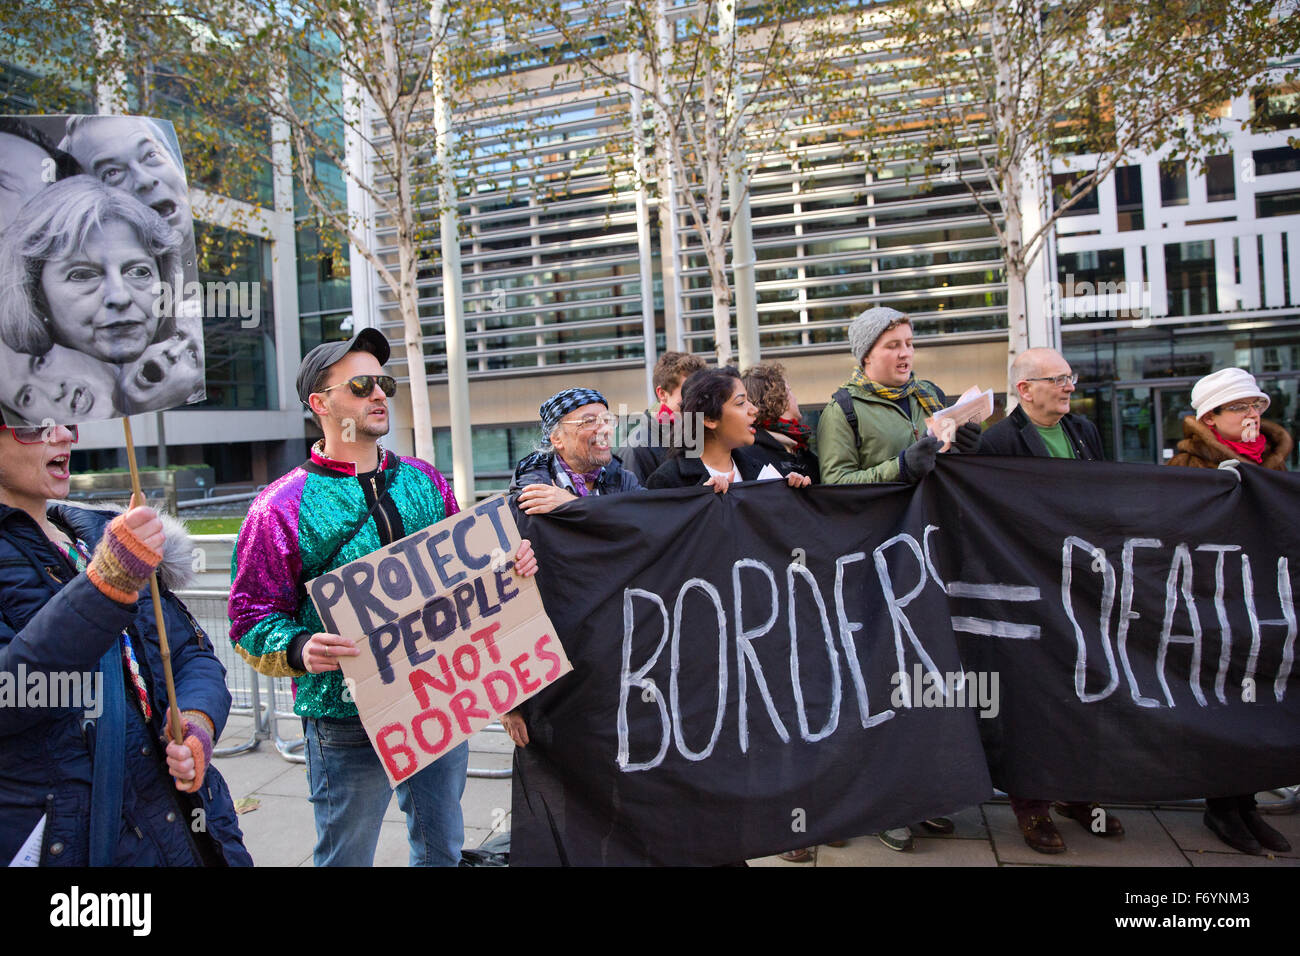 Londres, Royaume-Uni. 21 Nov, 2015. Protestation contre les militants politiques du gouvernement britannique sur l'immigration à l'extérieur du bureau à domicile. Credit : Mark Kerrison/Alamy Live News Banque D'Images